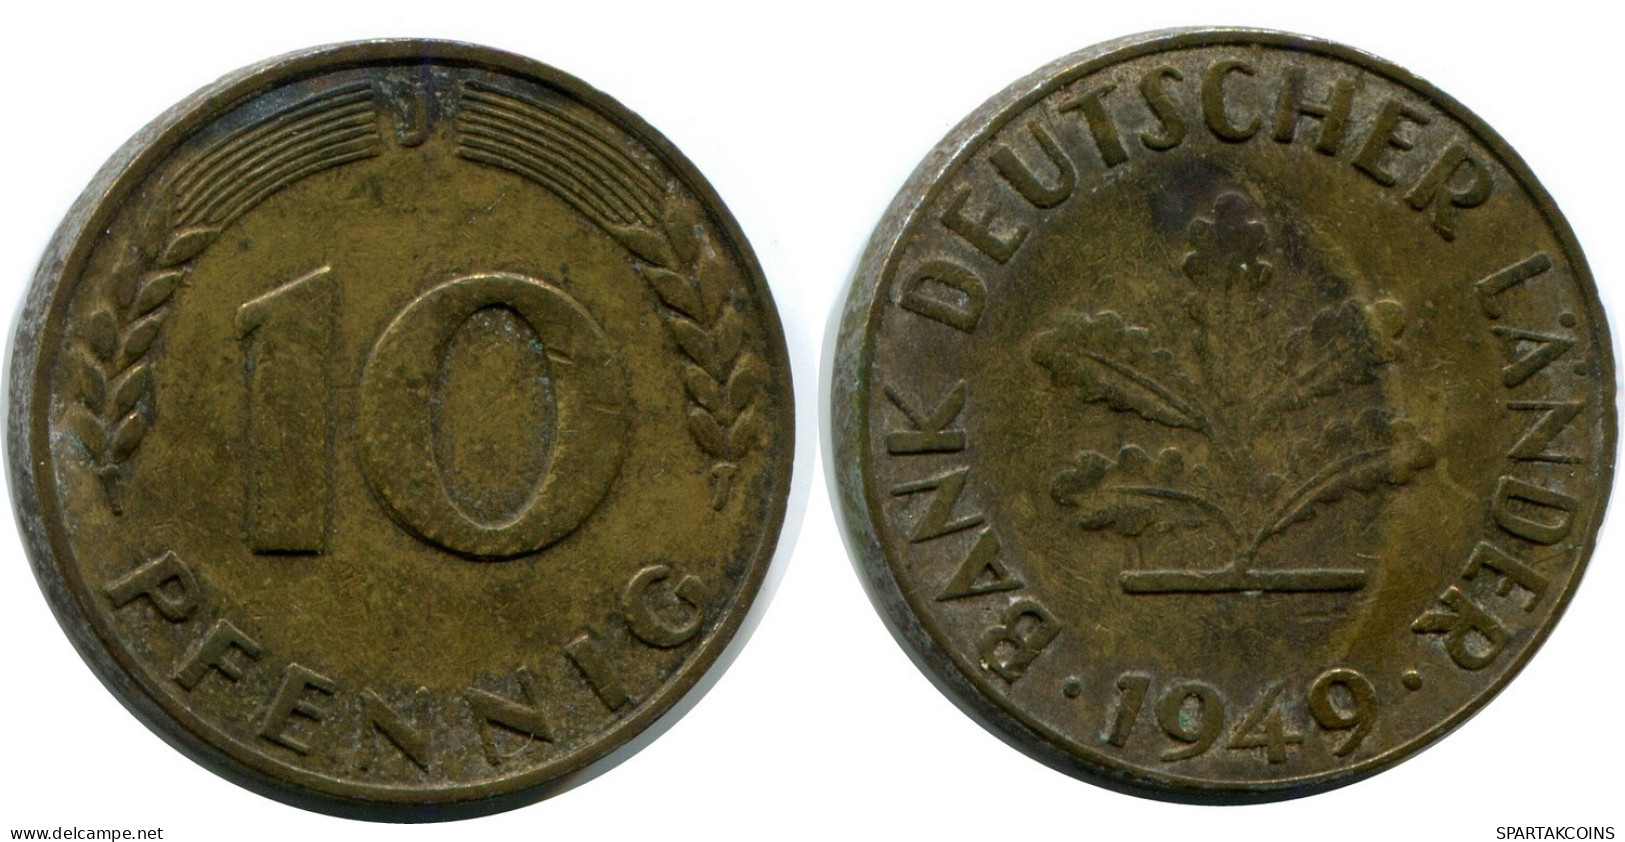 10 PFENNIG 1949 J WEST & UNIFIED GERMANY Coin #AW975.U.A - 10 Pfennig